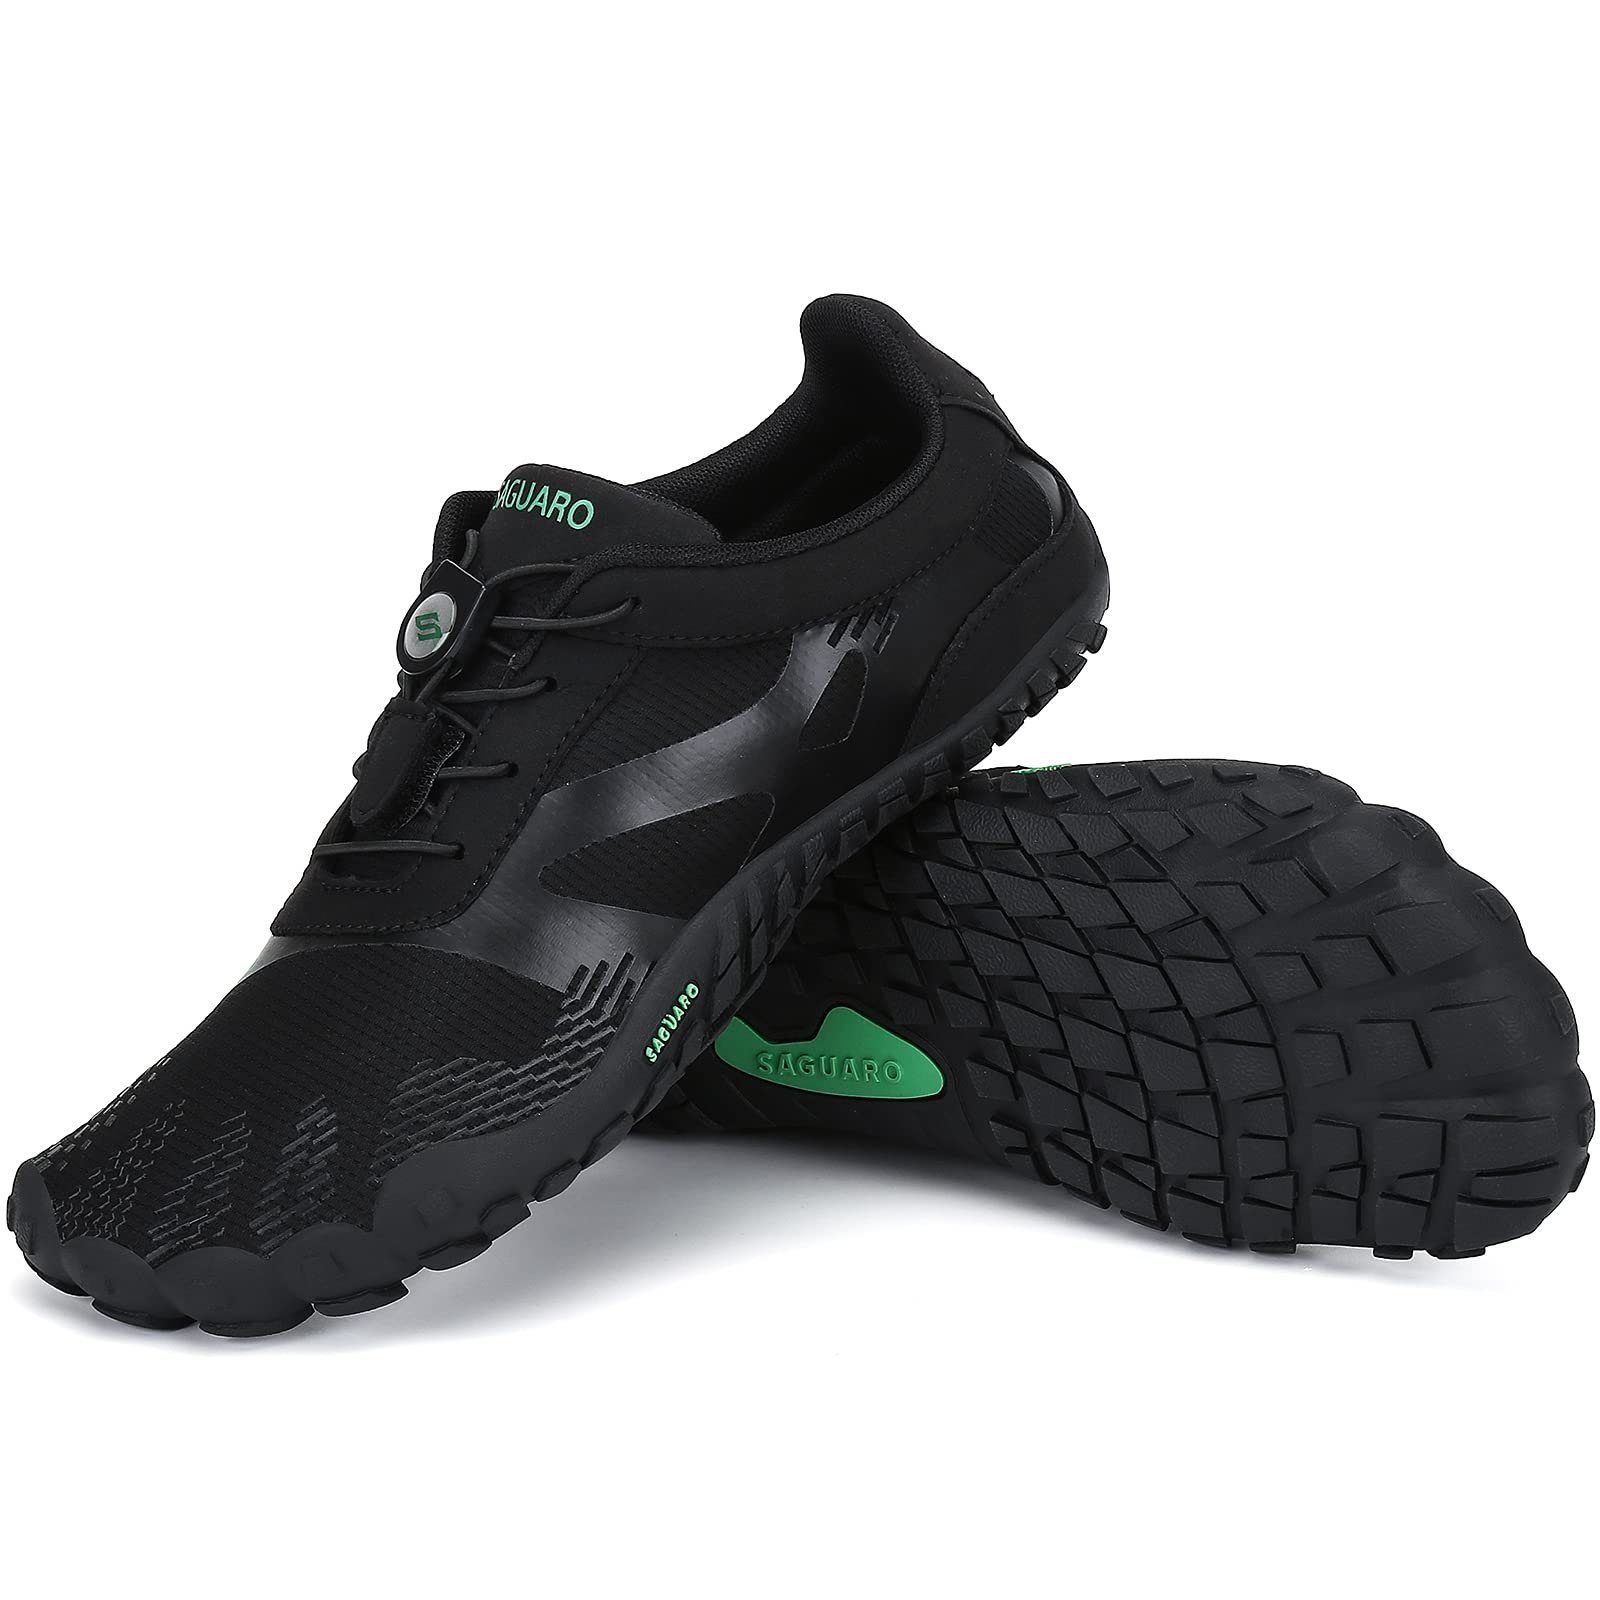 SAGUARO Barfußschuh (bequem, leicht, atmungsaktiv, rutschfest) Minimalschuhe Laufschuhe Sport-Schuhe Jogging Sneaker Trail-Running Schwarz 054